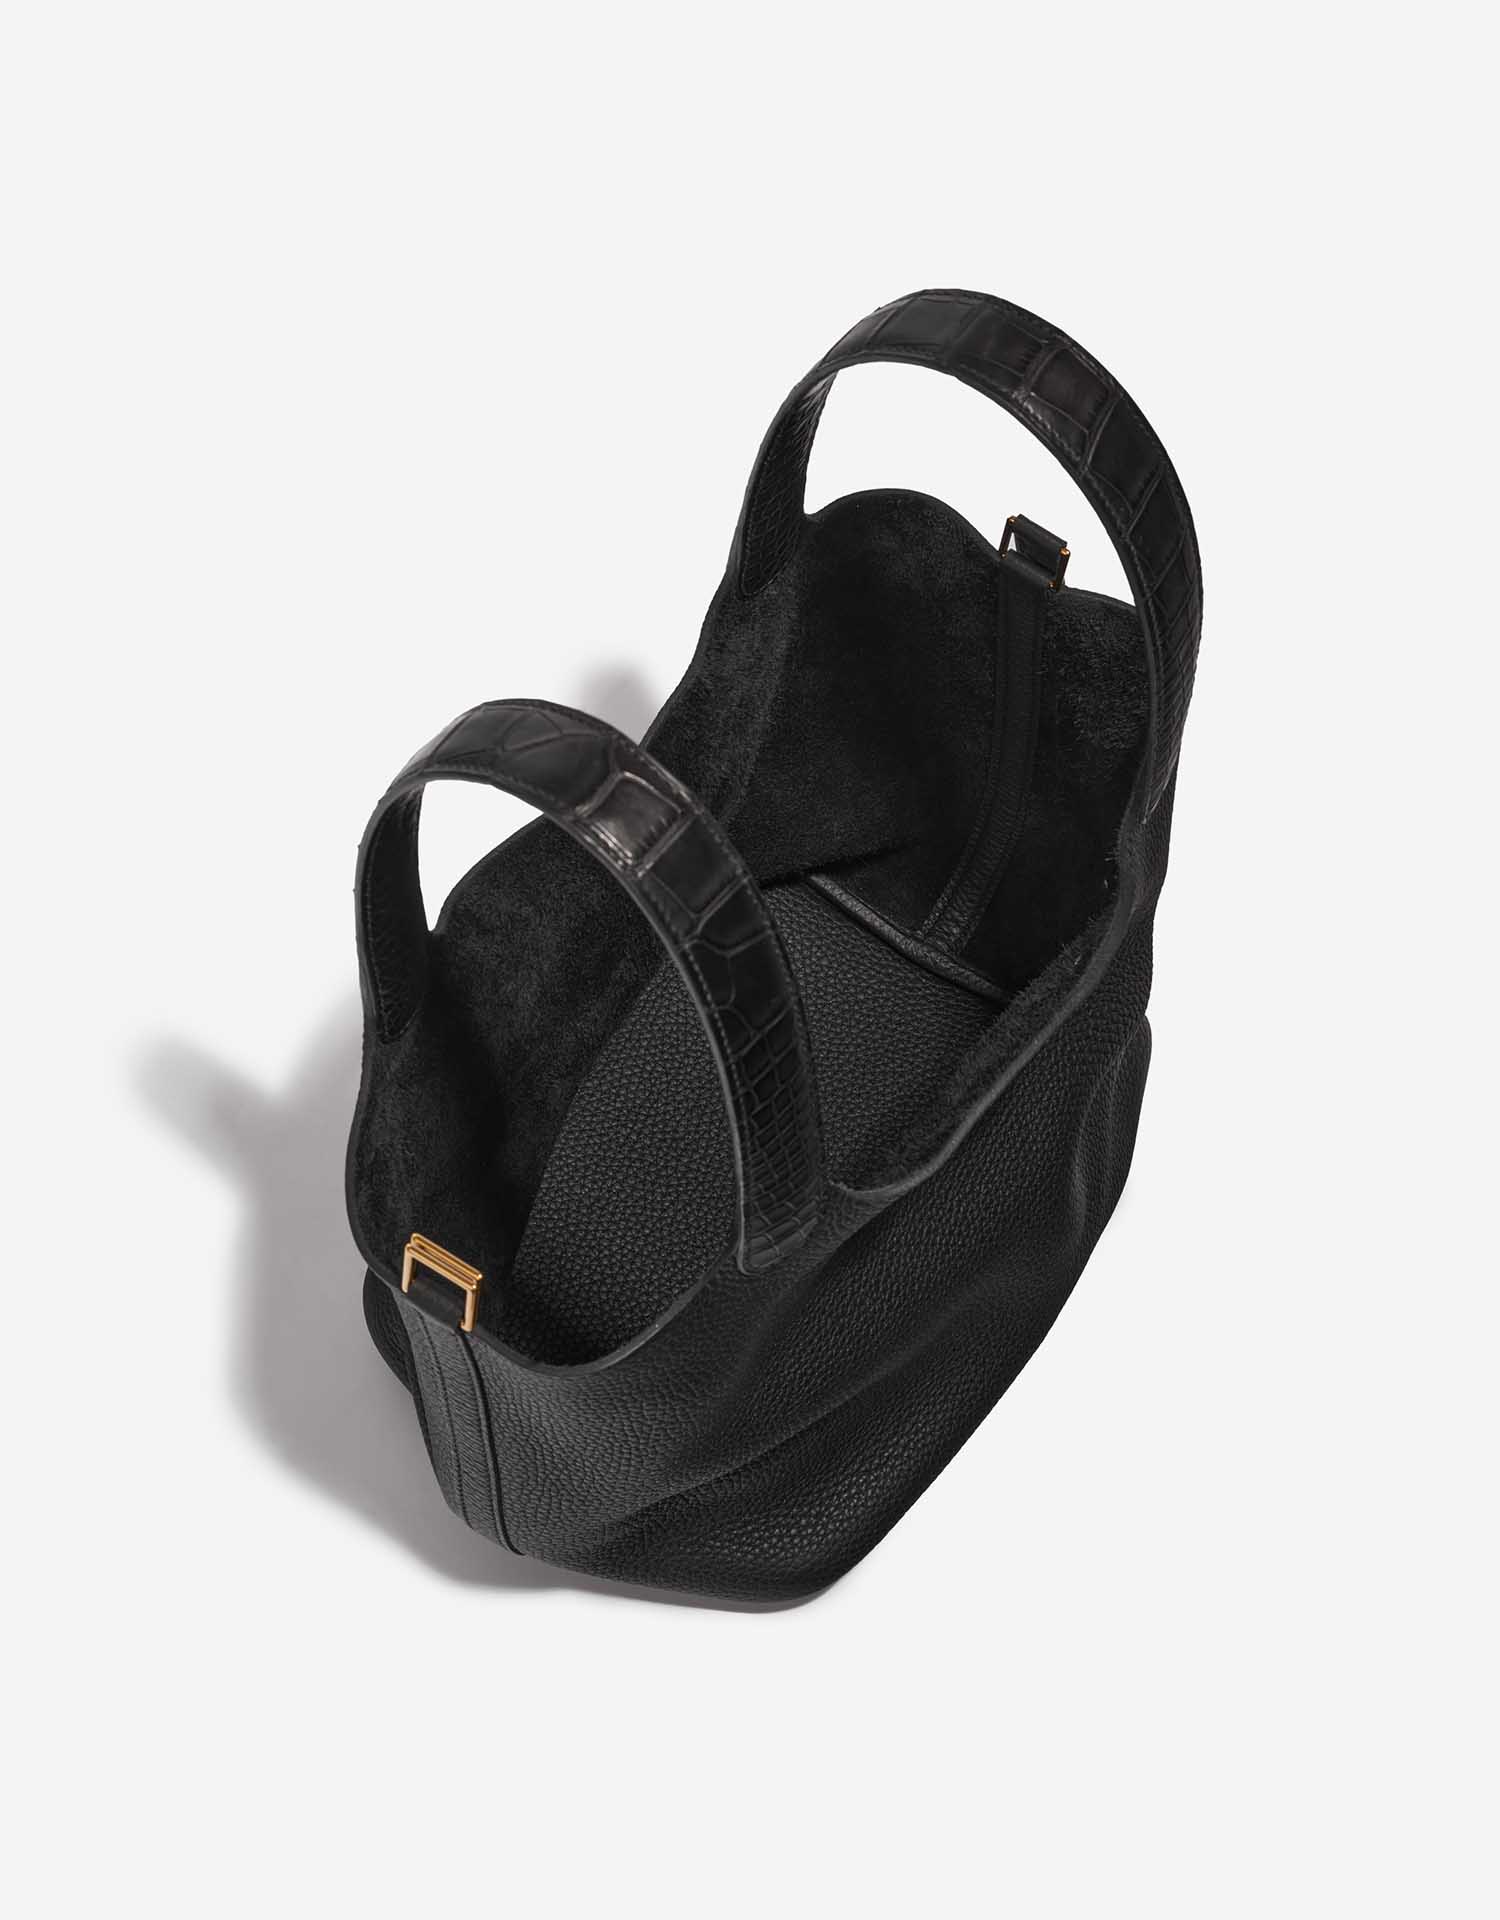 Pre-owned Hermès bag Picotin Touch 22 Clemence / Matte Alligator Black Black Inside | Sell your designer bag on Saclab.com